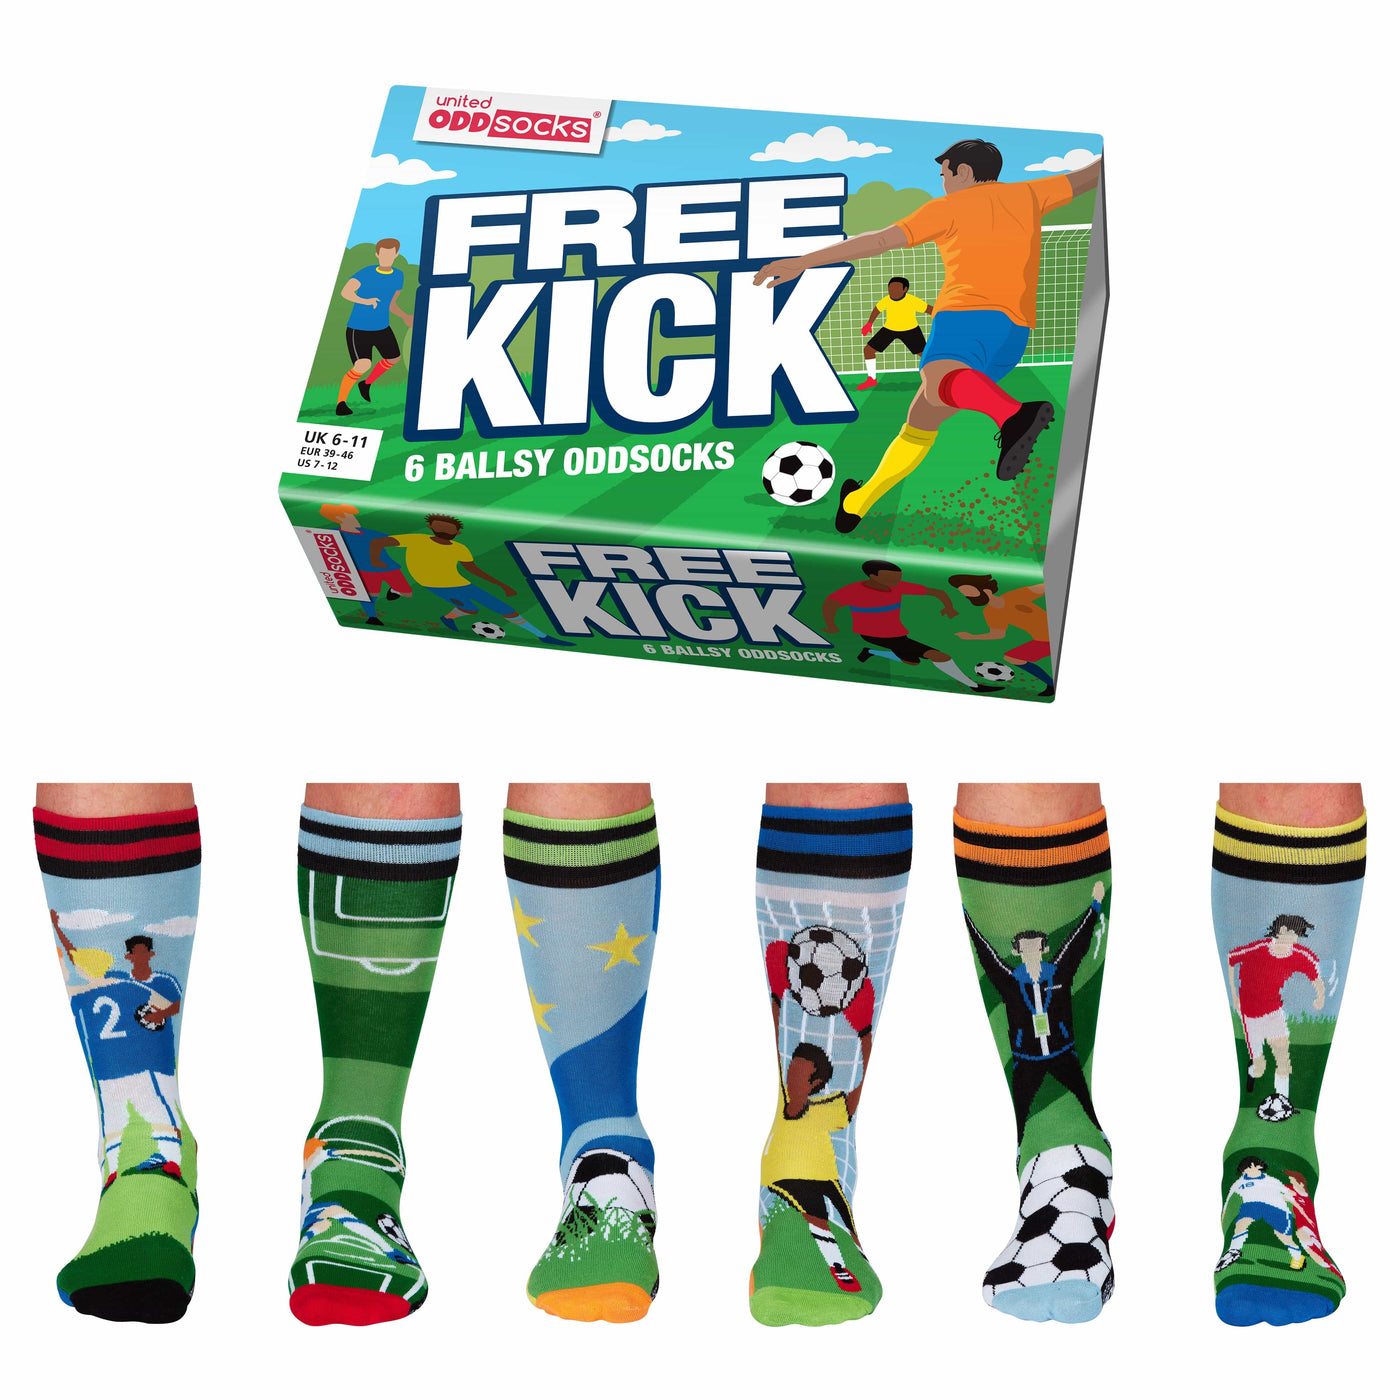 United Odd Socks Socks Free Kick Men's Oddsocks